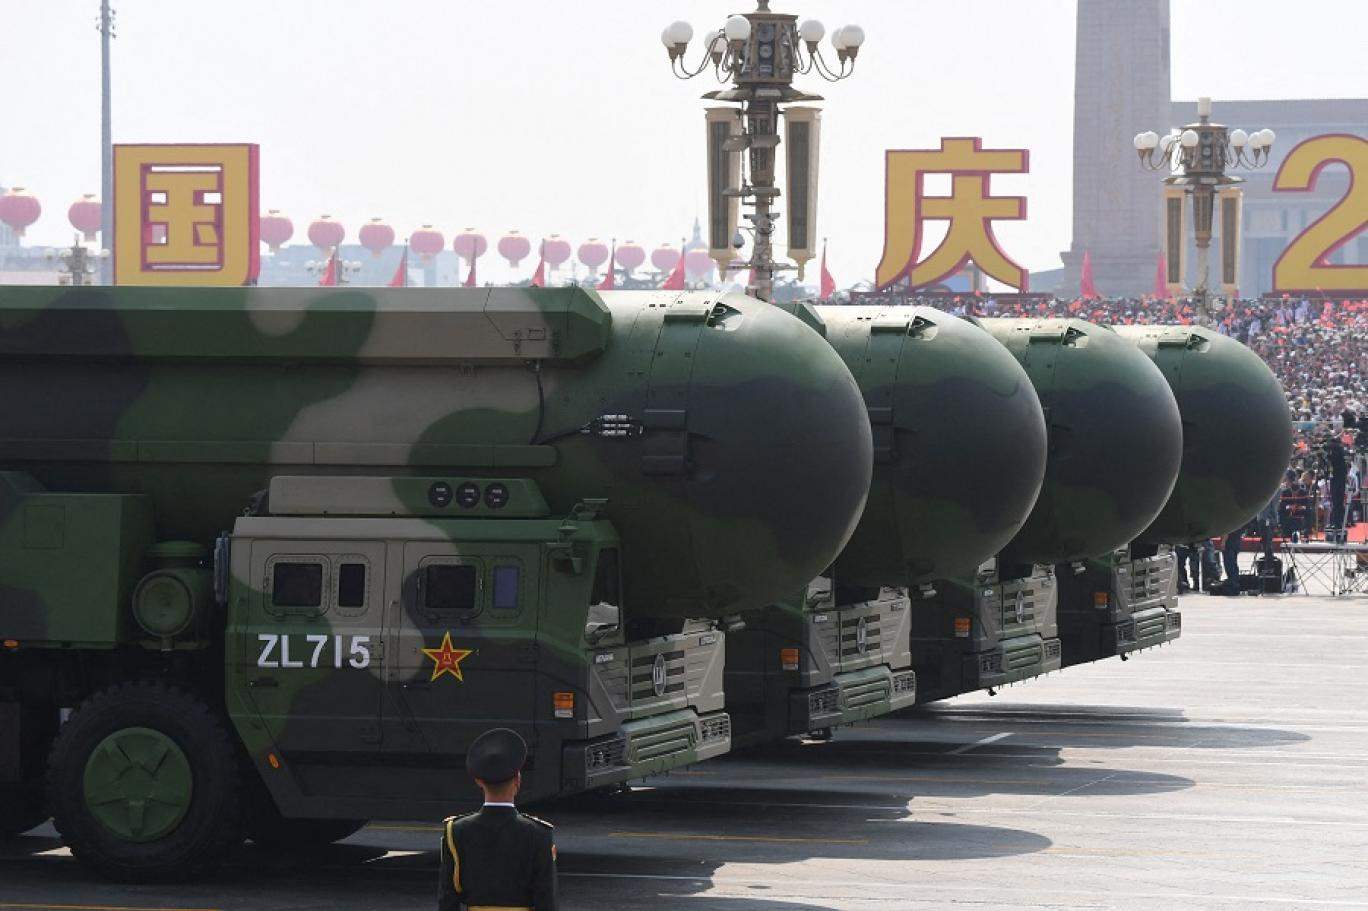 الصين توسع ترسانتها النووية في سياق توترات عالمية متصاعدة